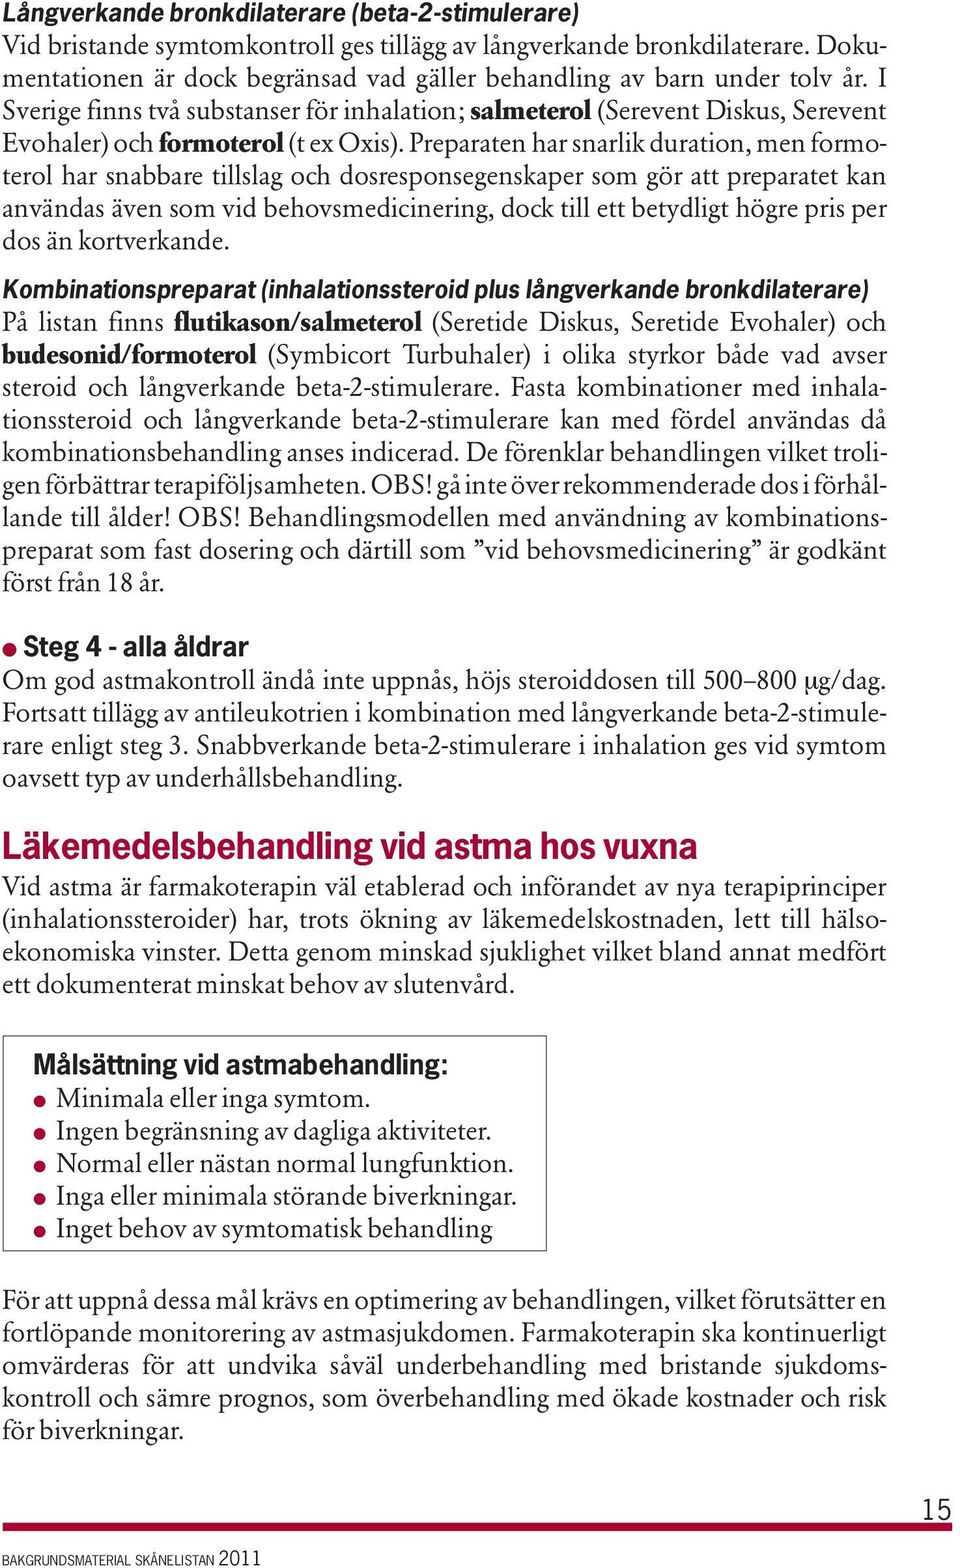 I Sverige finns två substanser för inhalation; salmeterol (Serevent Diskus, Serevent Evohaler) och formoterol (t ex Oxis).